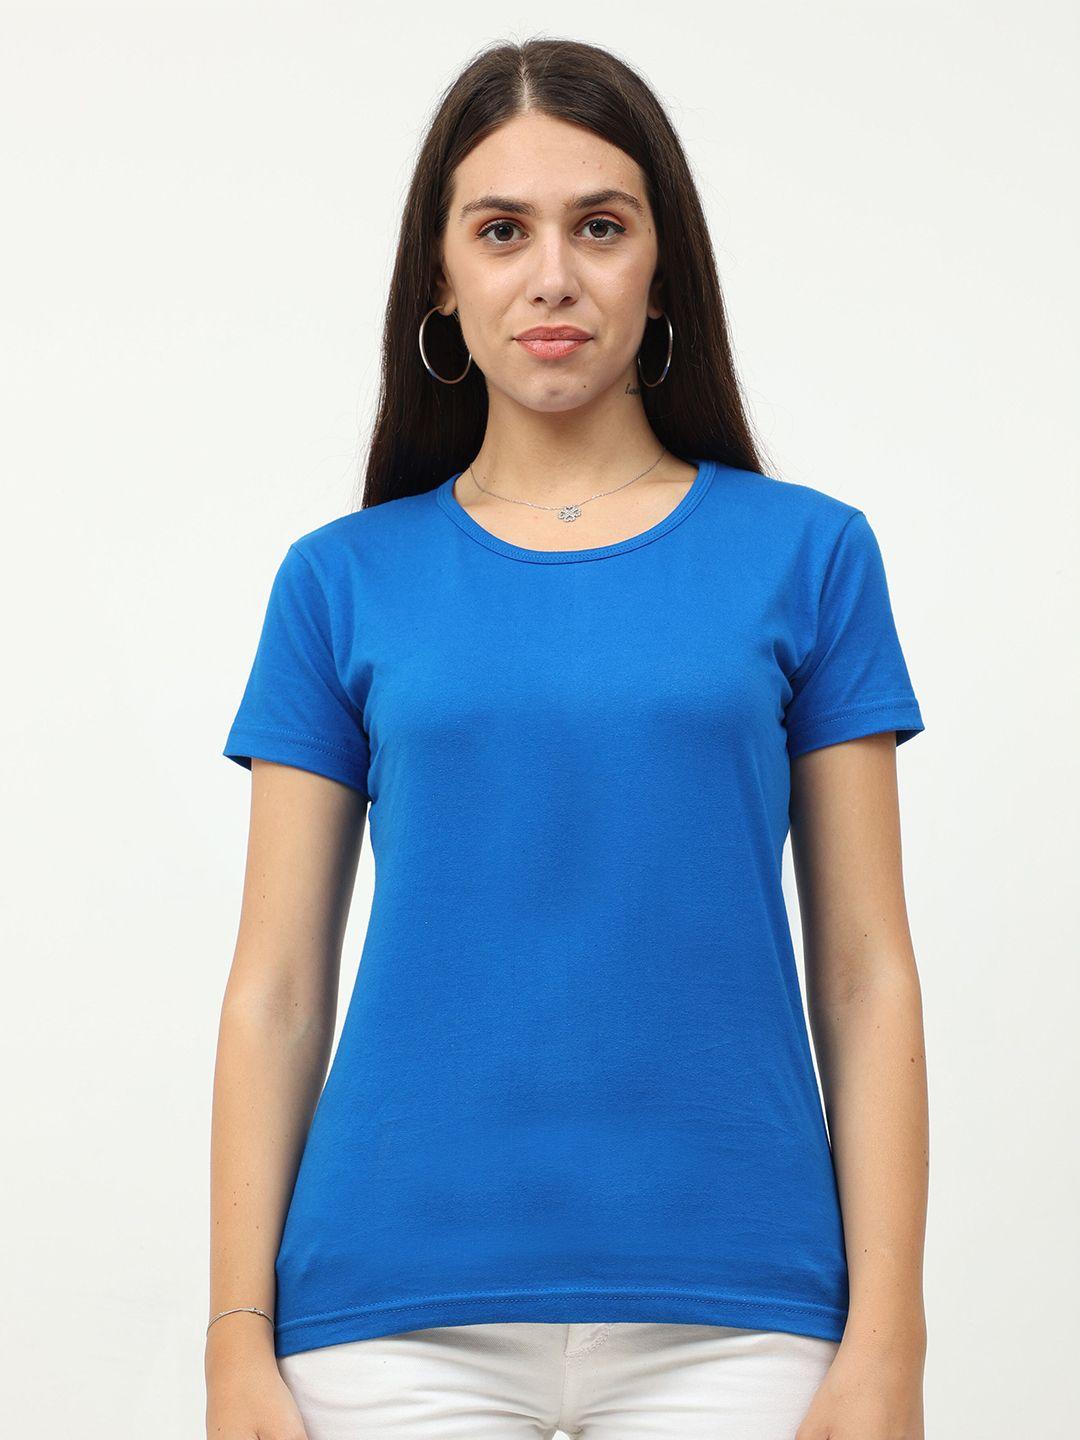 fleximaa women blue t-shirt